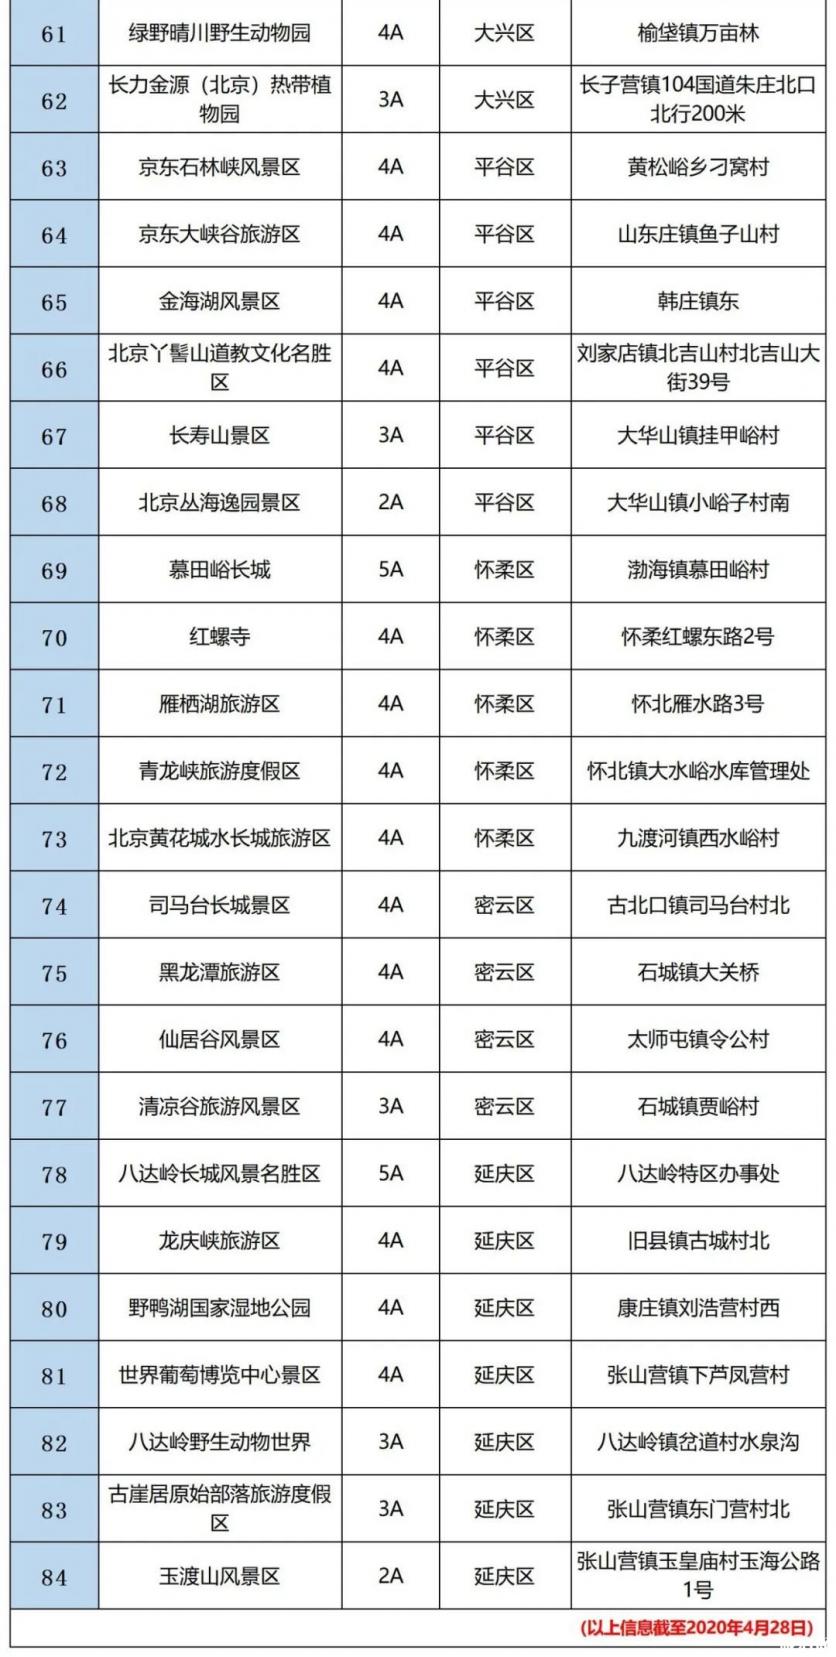 北京恢复市内组团游 开放景区名单2020